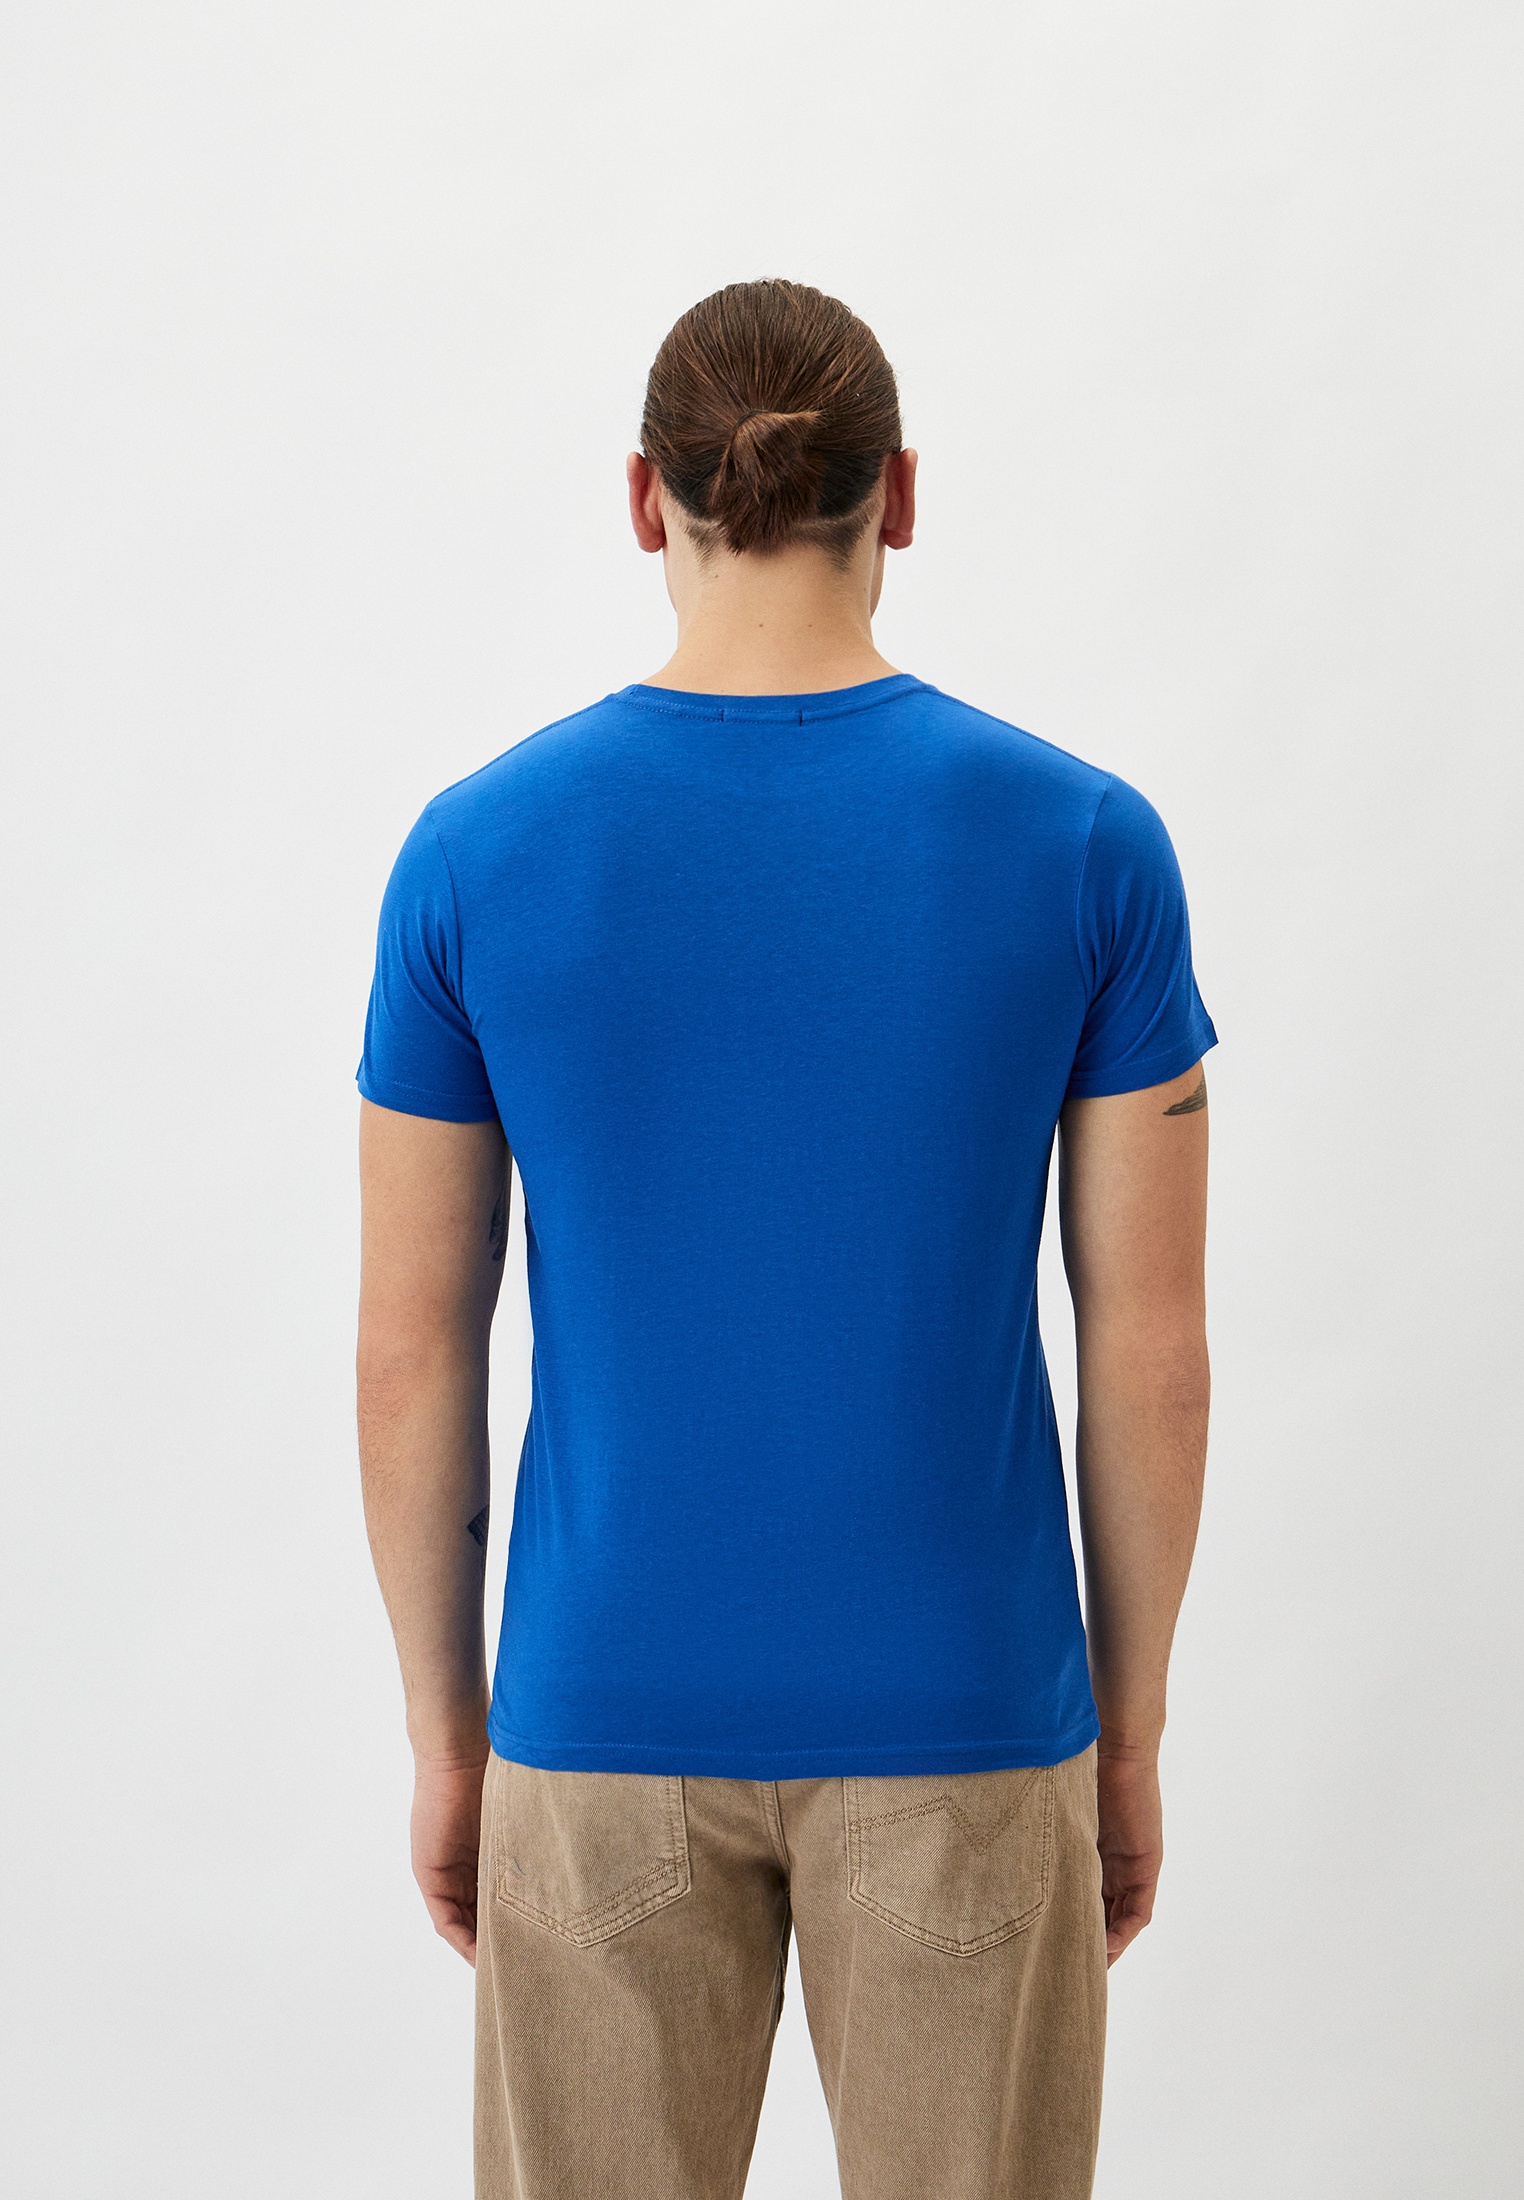 Мужская футболка Baldinini (Балдинини) B-OLM-M014: изображение 7